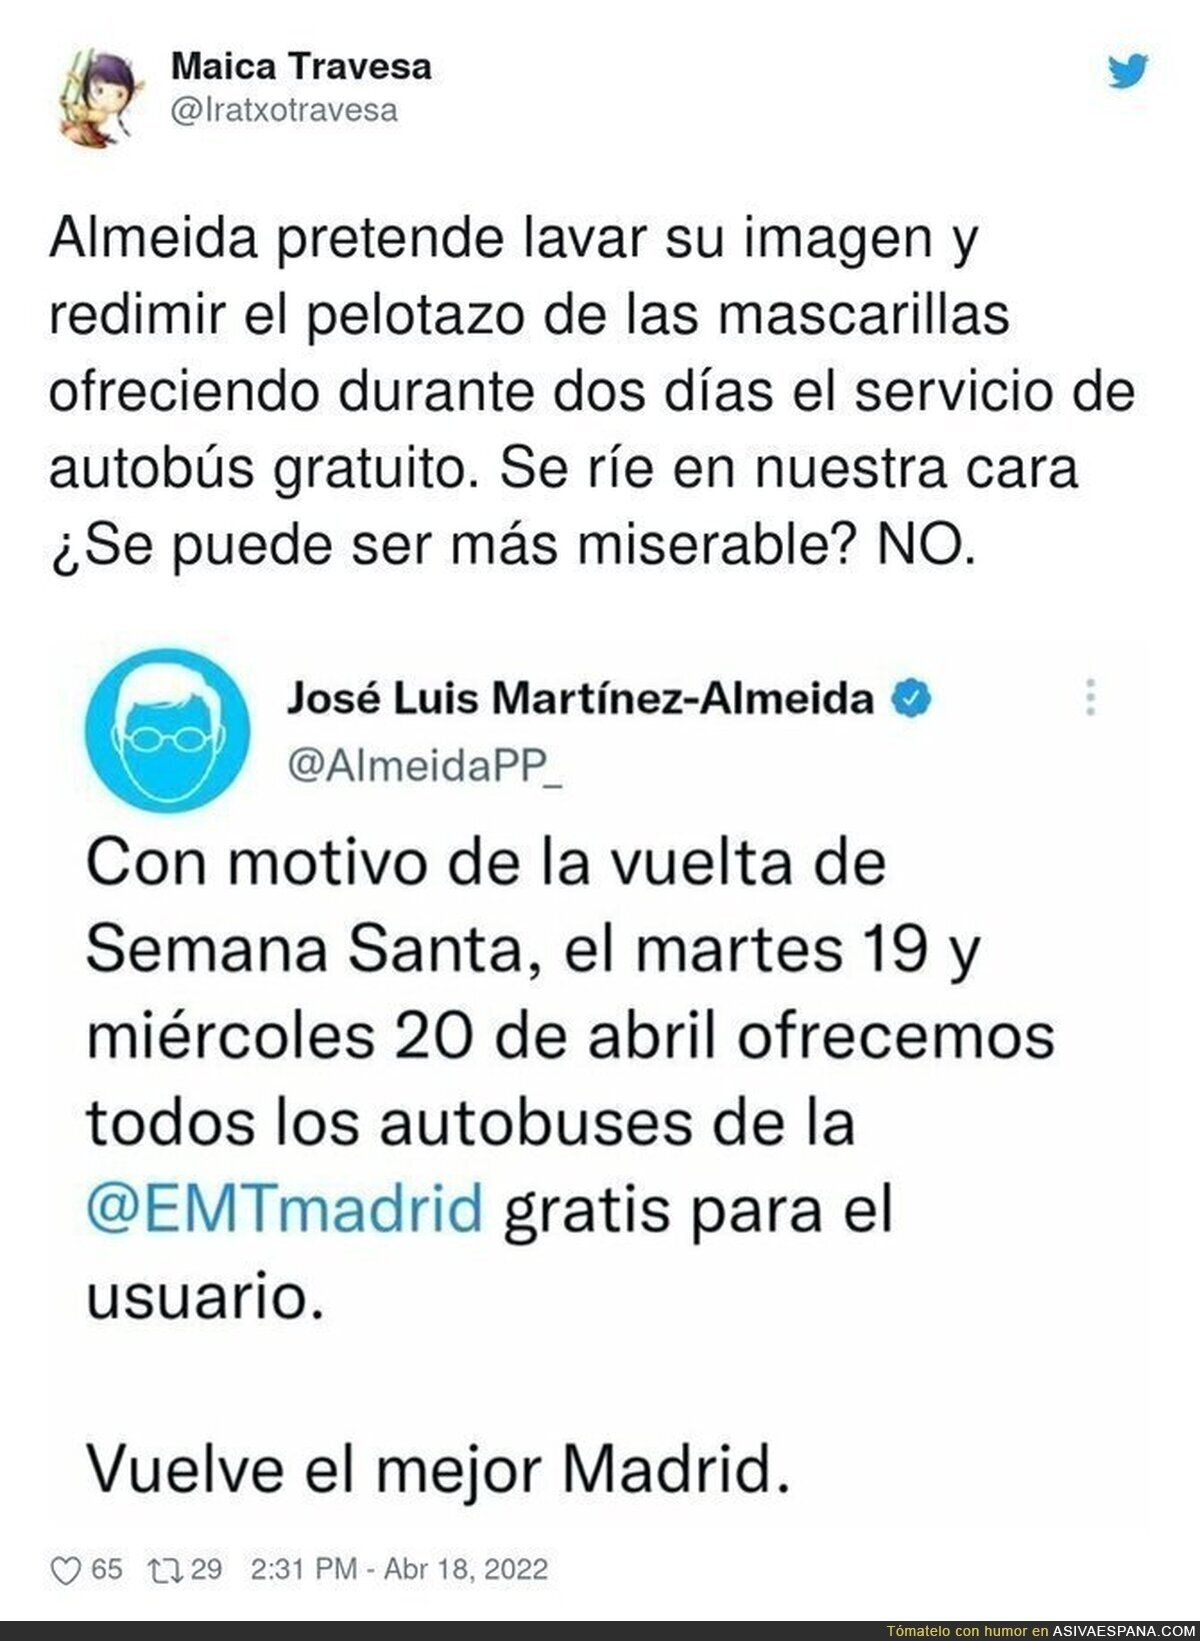 José Luis Martínez-Almeida y sus tácticas para lavar su imagen